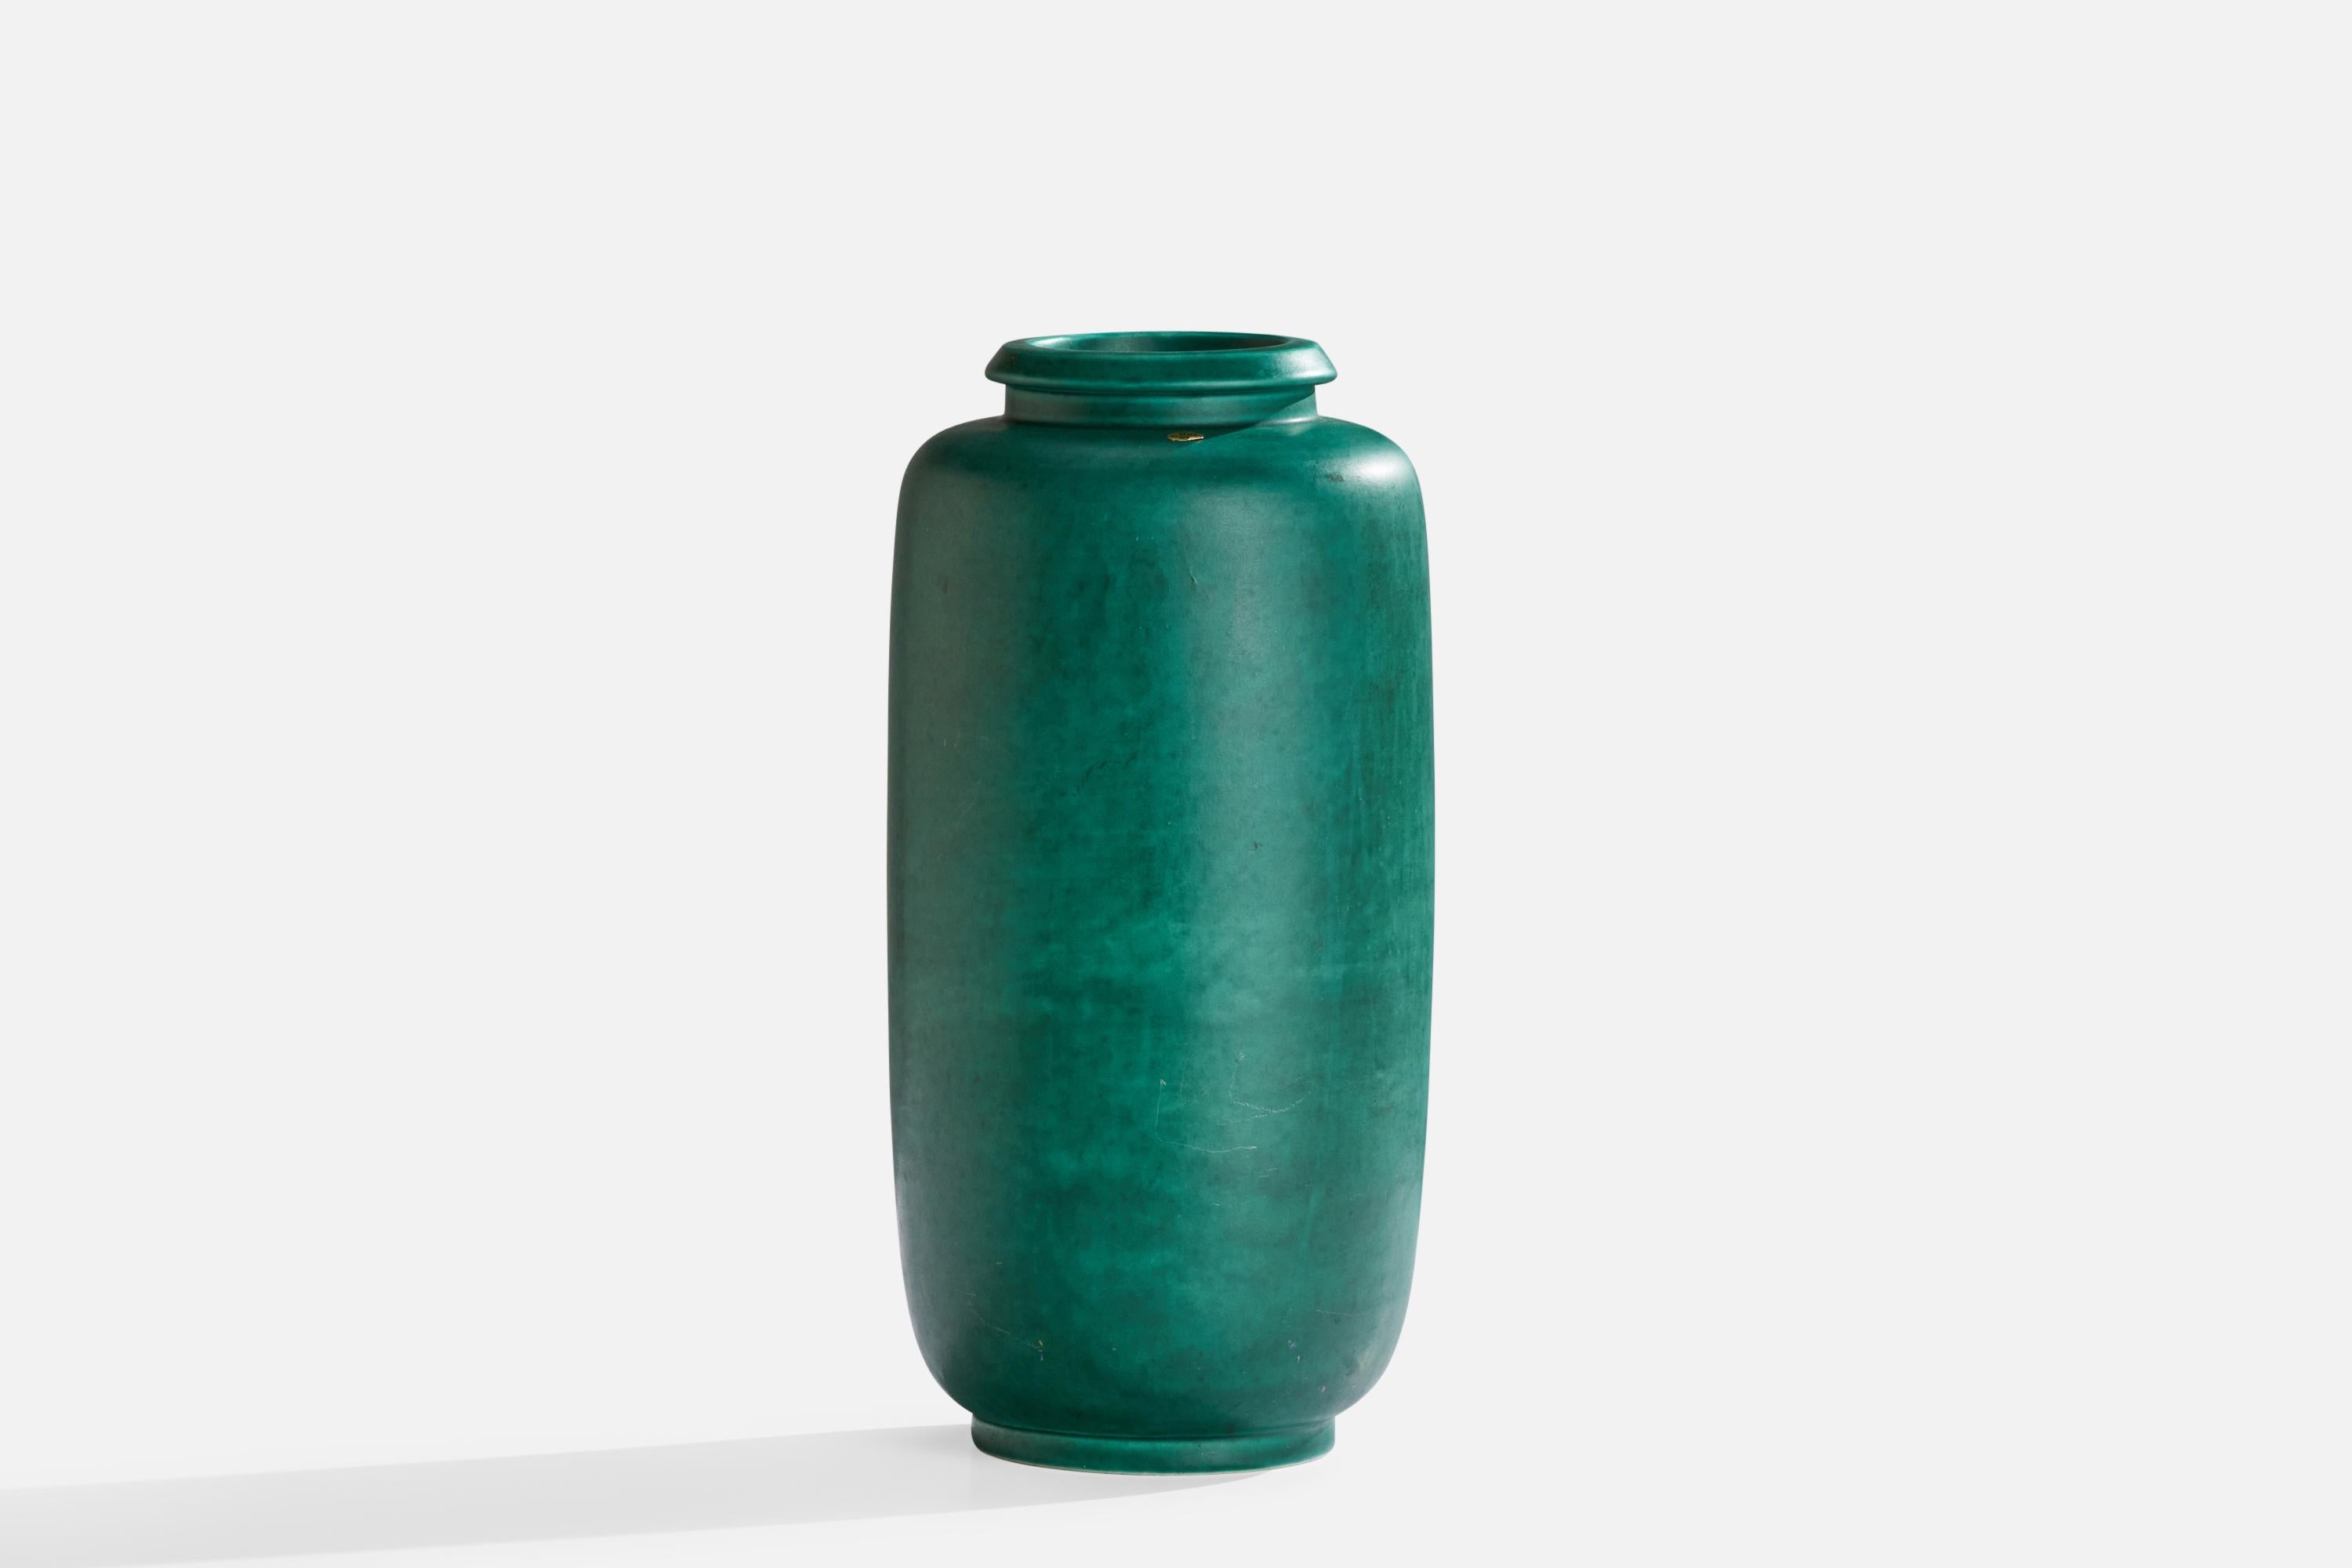 Vase en grès émaillé vert conçu par Wilhelm Kåge et produit par Gustavsberg, Suède, vers les années 1950.